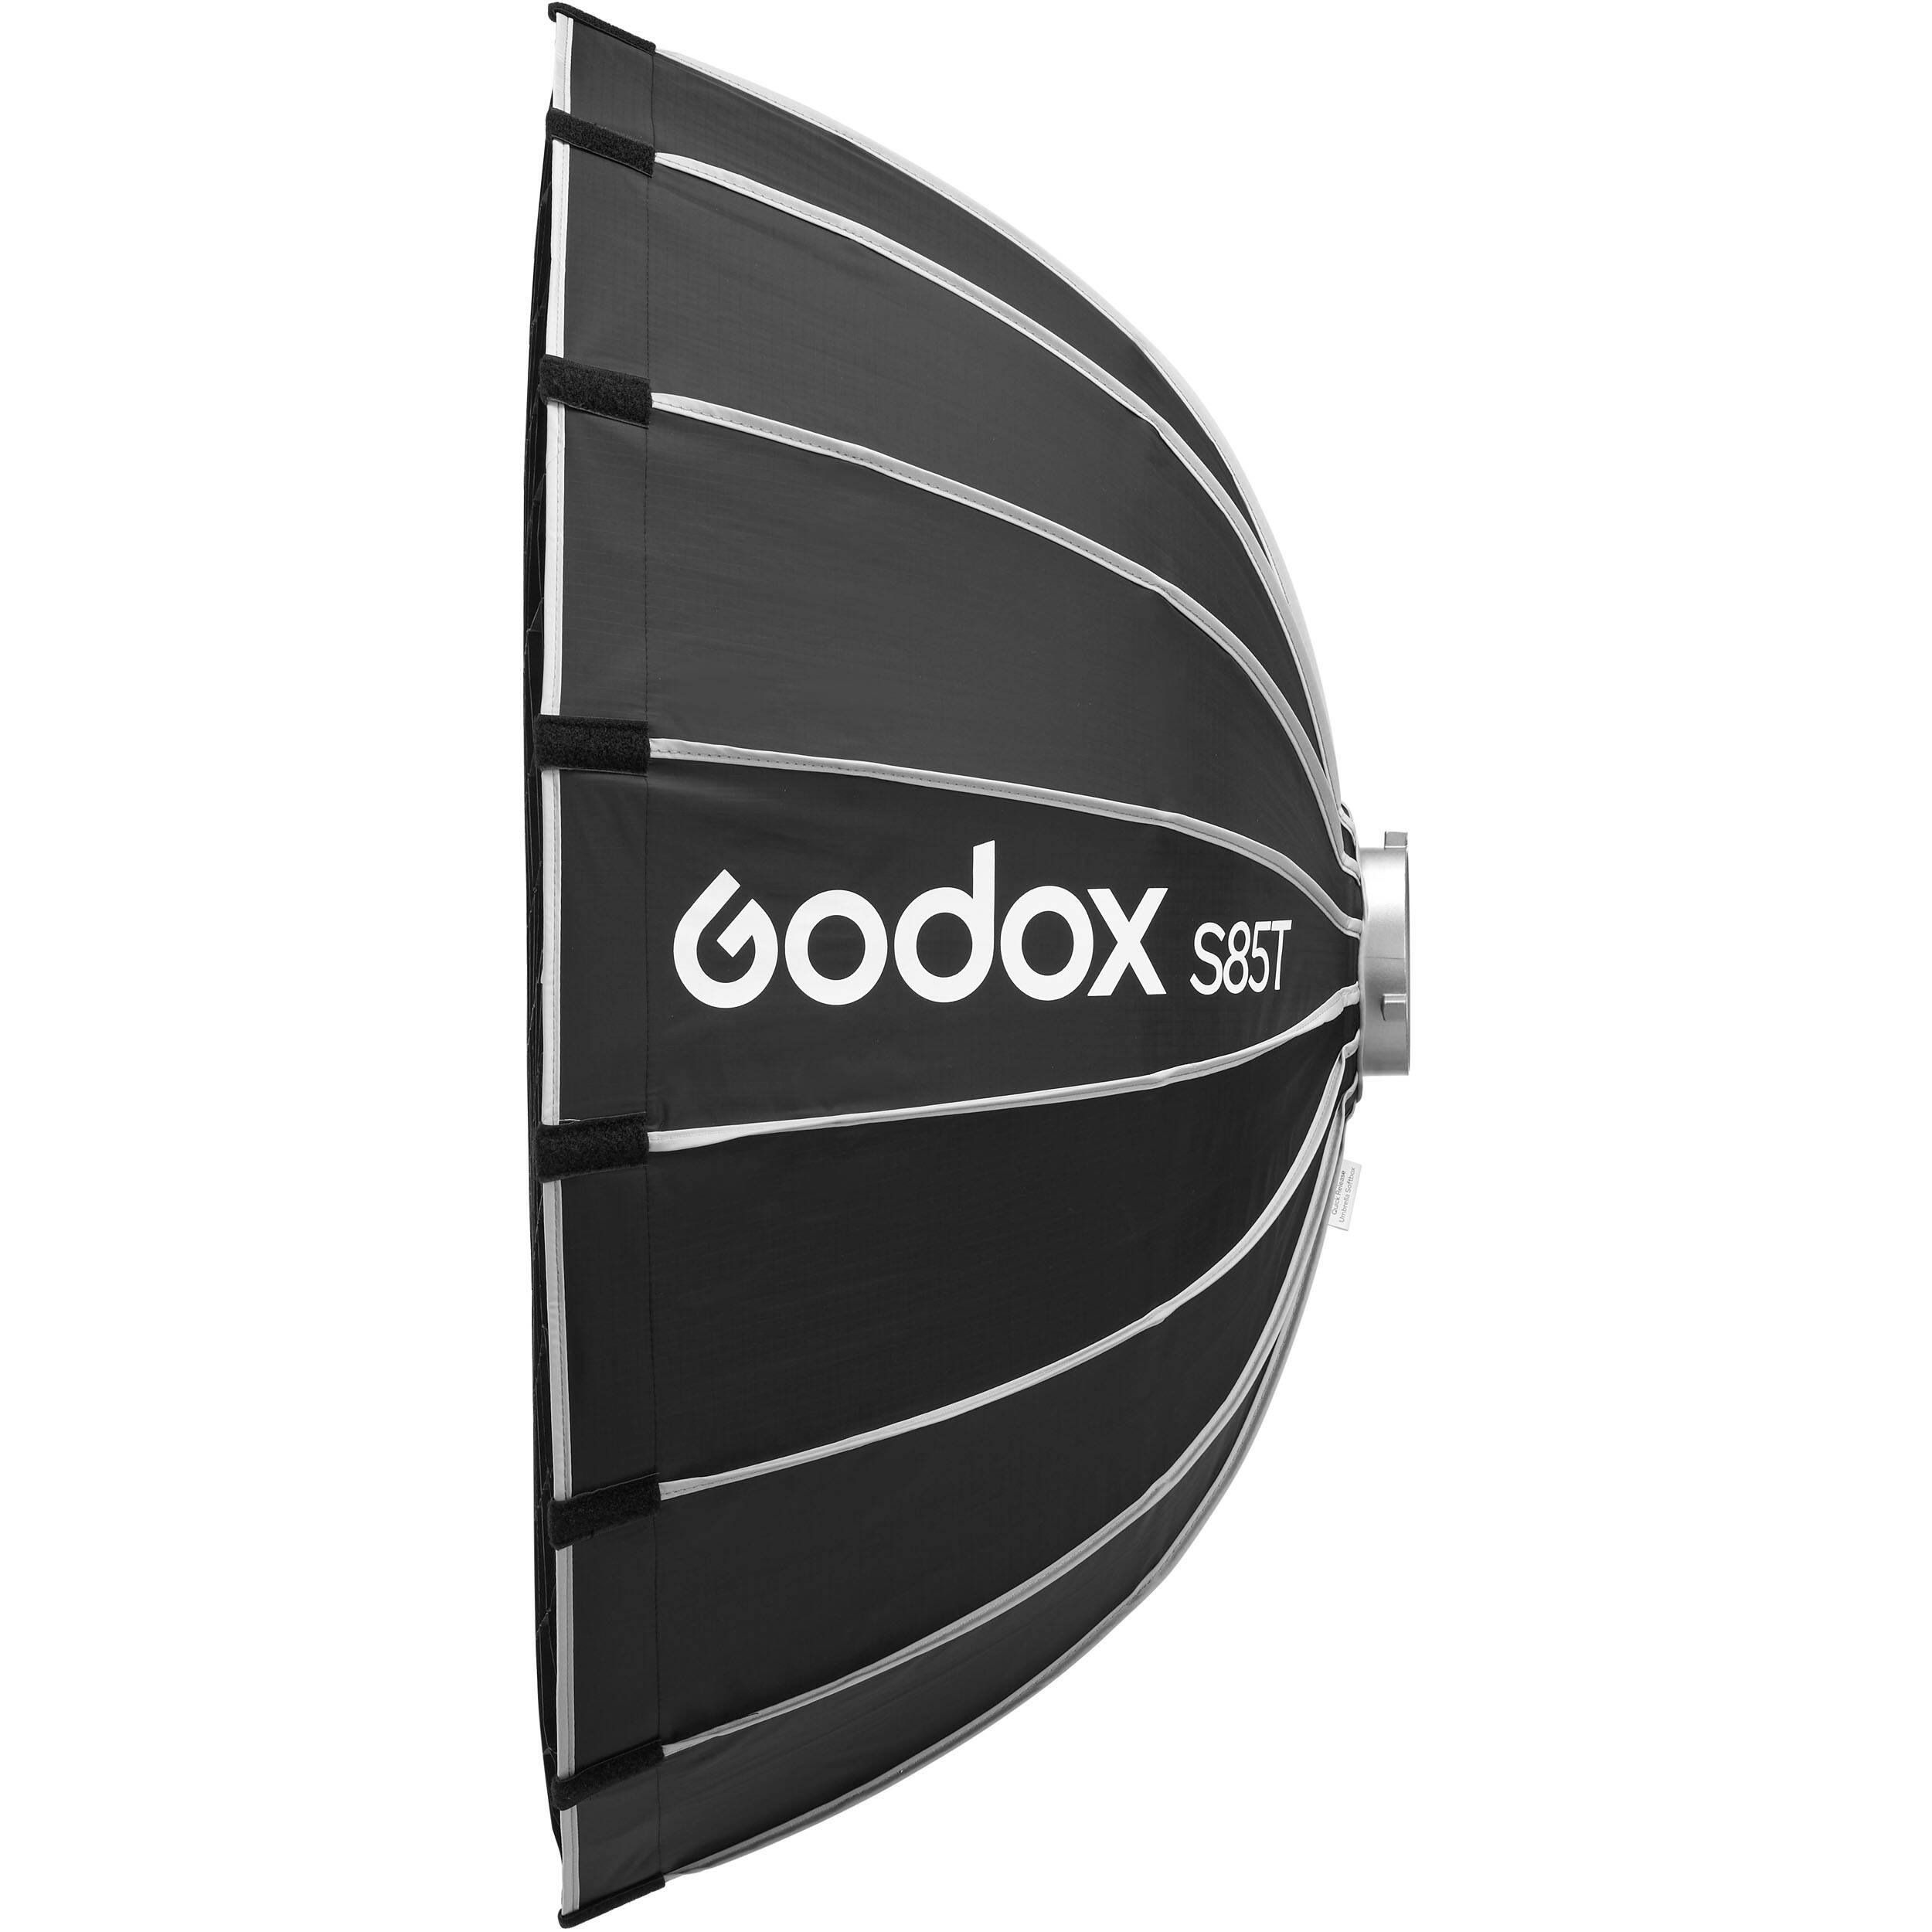  - Godox S85T    Ultra-mart